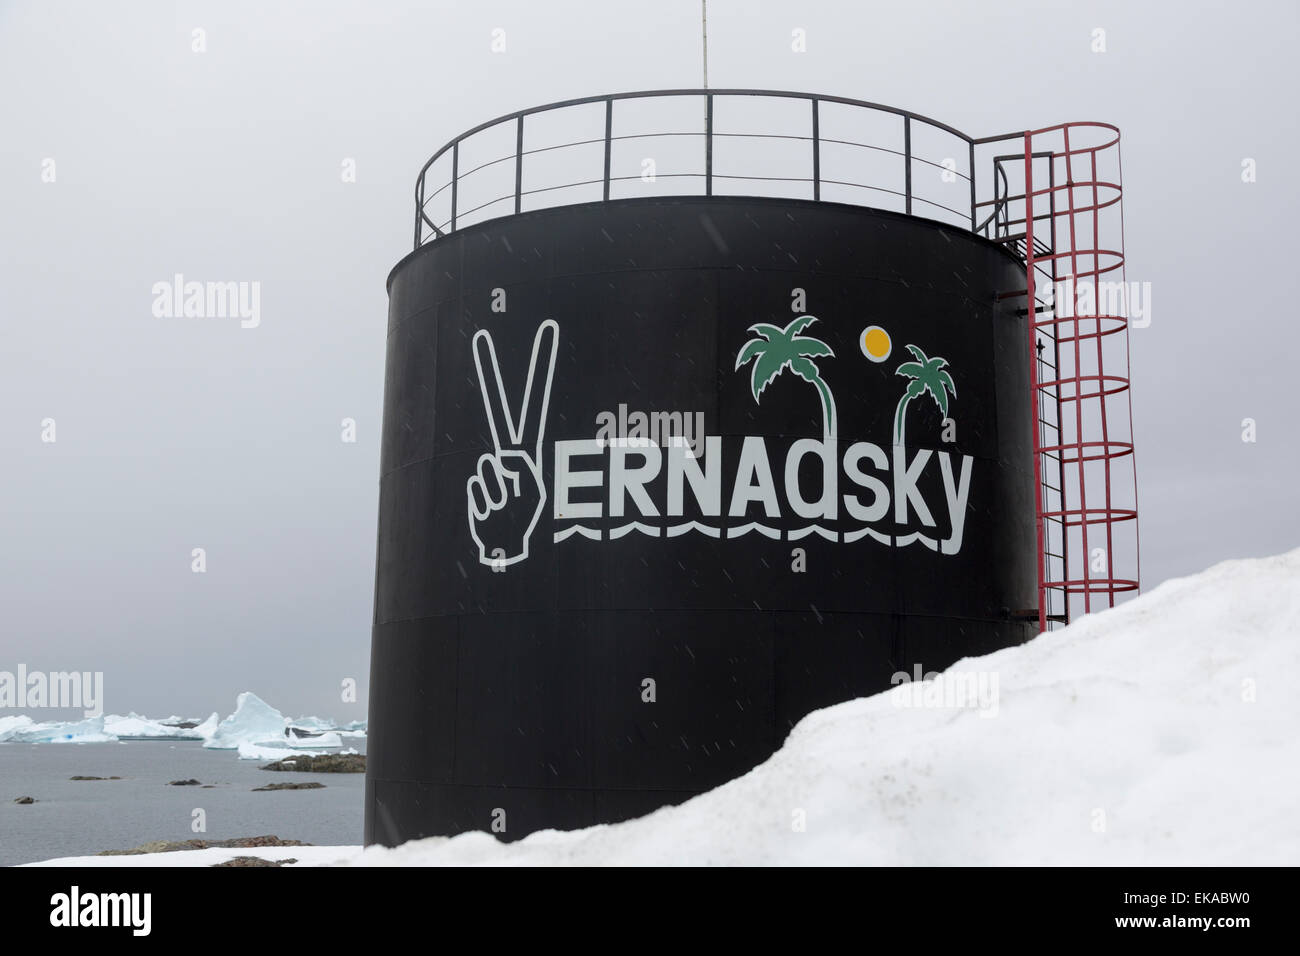 Réservoir avec signe d'humour, de recherche, de base Vernadsky Île Galindez Argentine, Antarctique, îles Banque D'Images